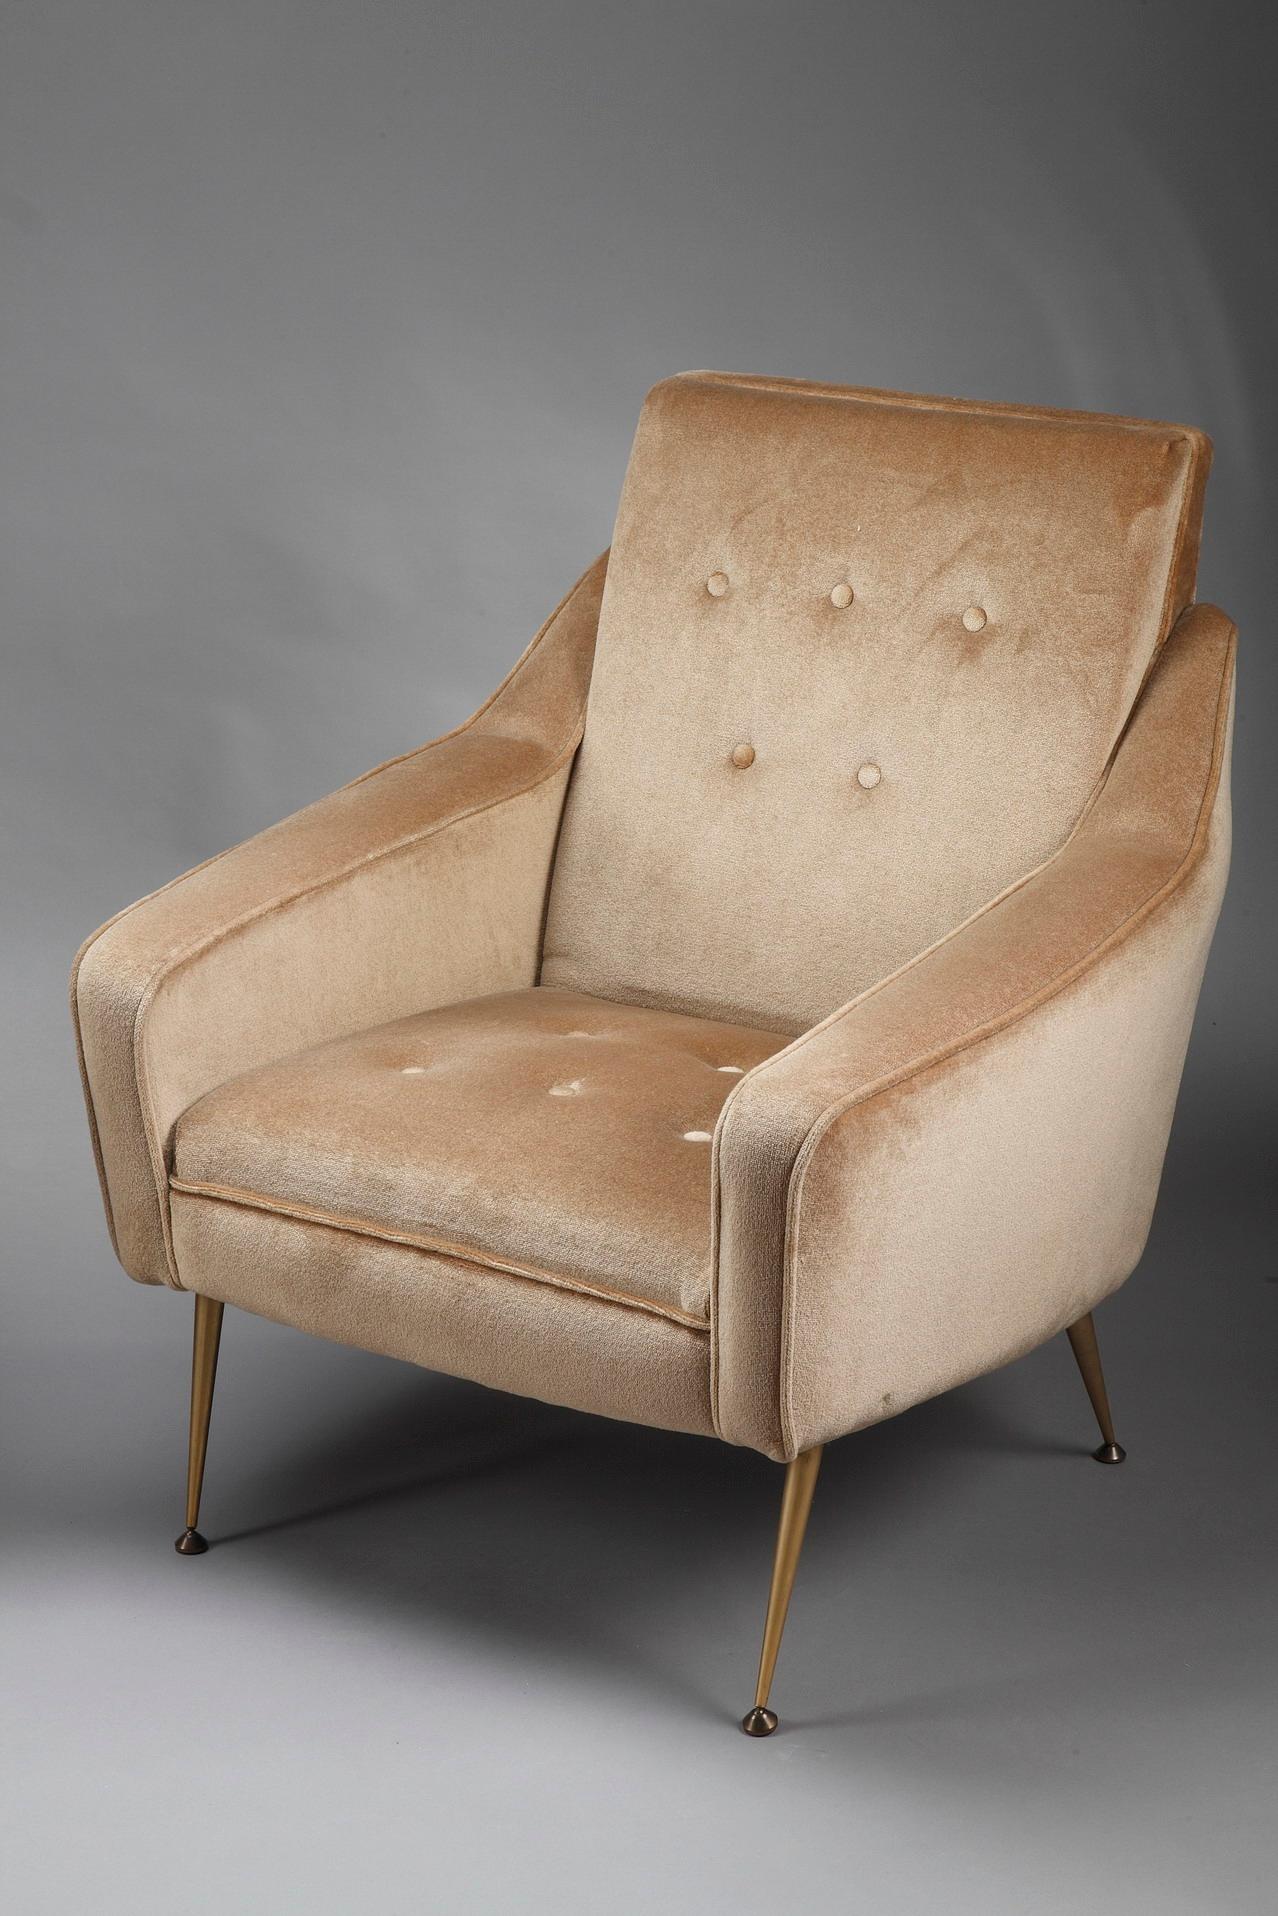 Paire d'imposantes chaises bergère en velours ocre fabriquées dans les années 1950, avec pieds arqués en métal doré. La bergère est un grand fauteuil confortable dont les côtés solides montent jusqu'à la ceinture. Ce type de meuble est apparu en